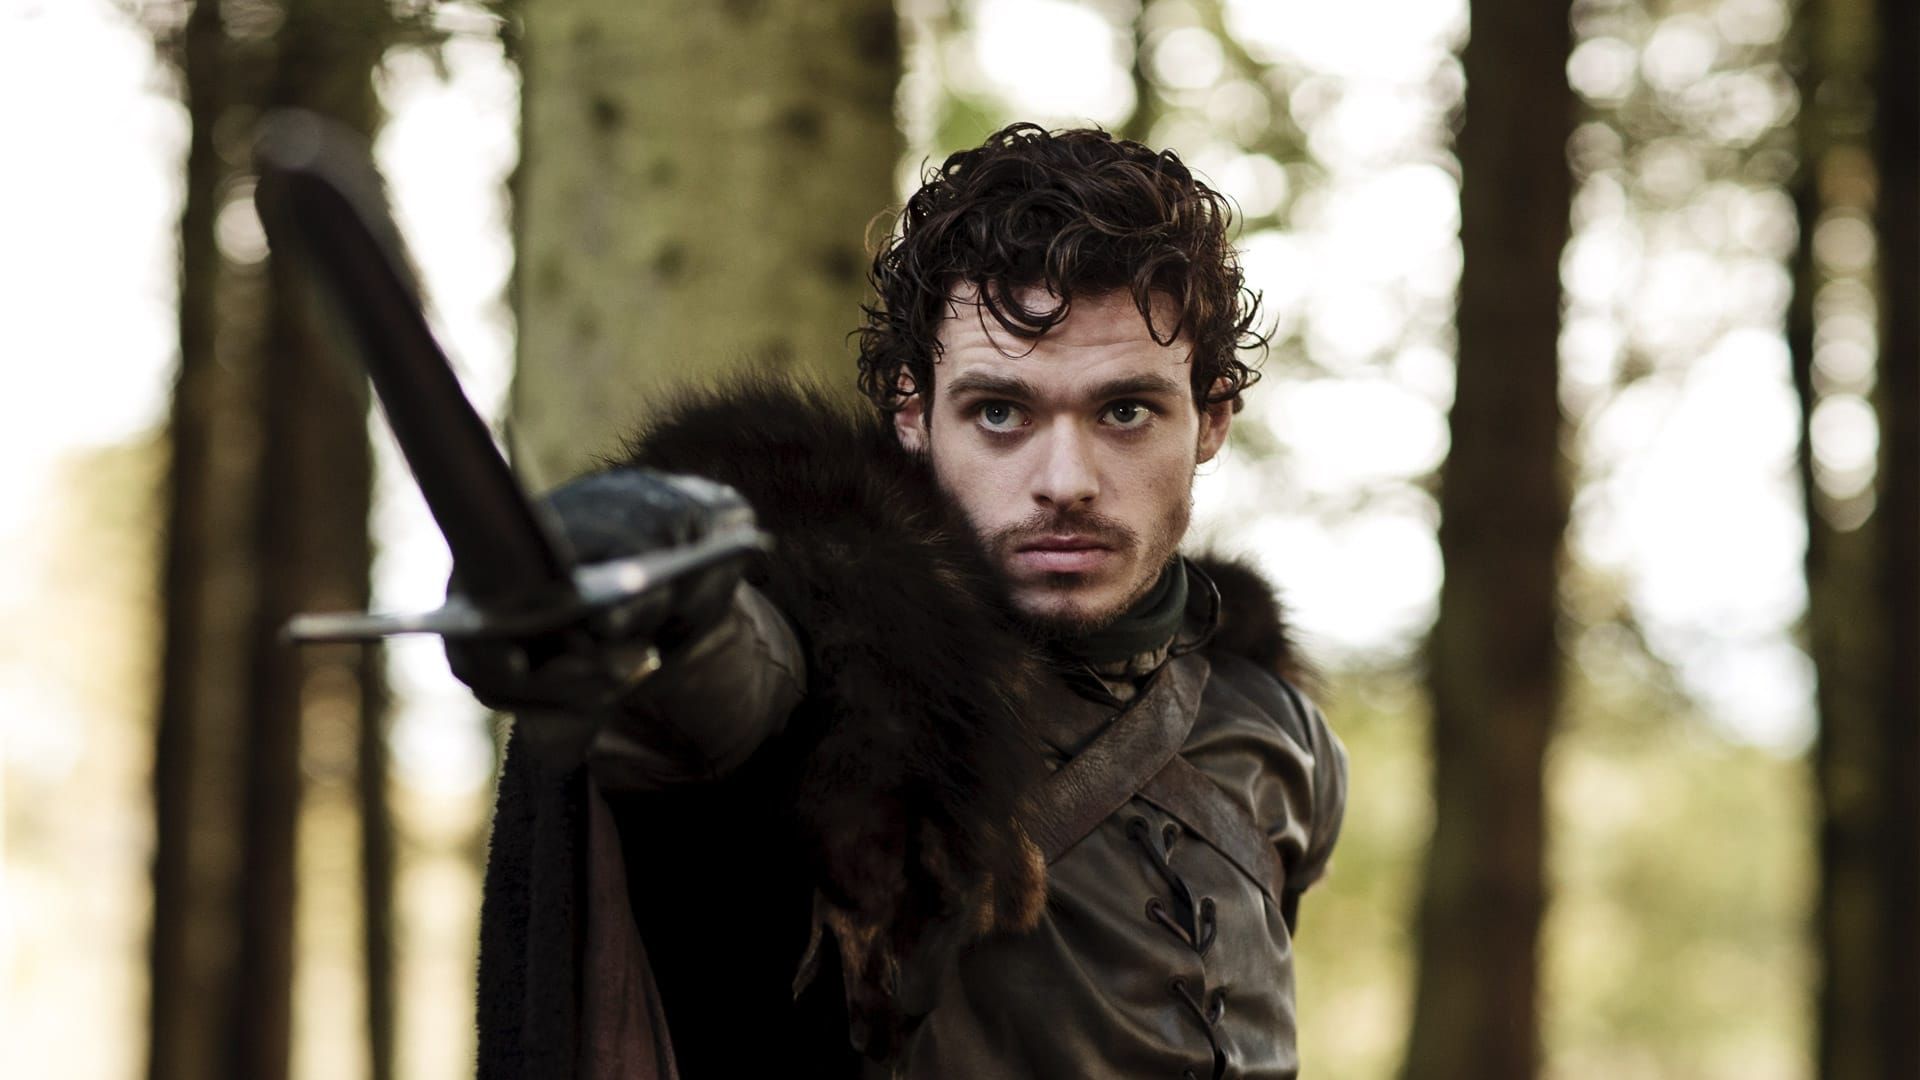 Watch Game of Thrones online - Stream Full Episodes